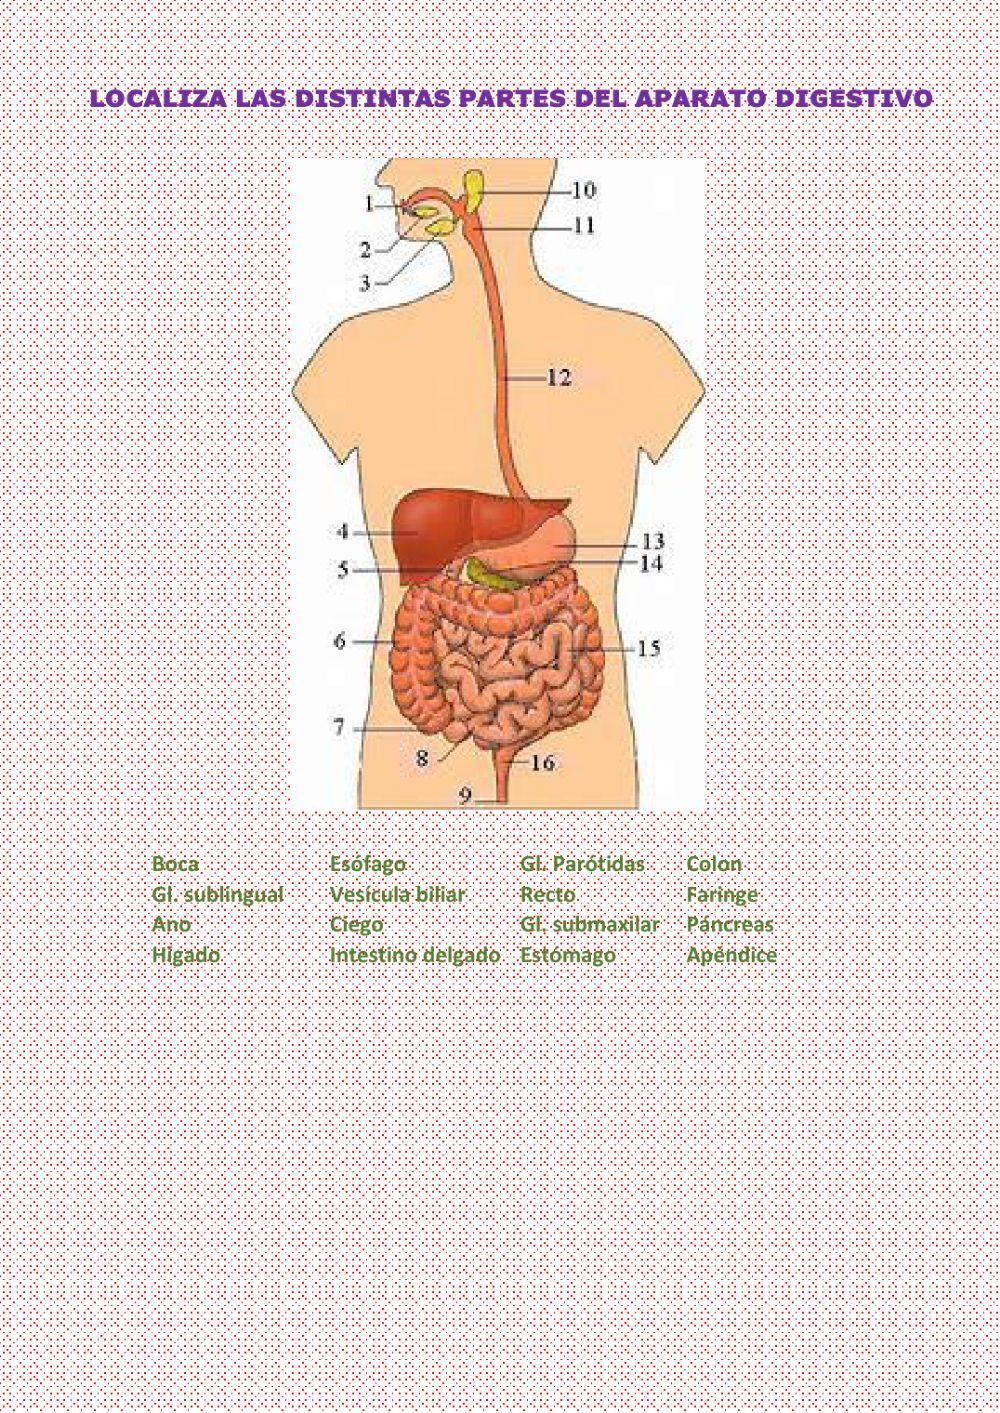 Partes del Aparato digestivo